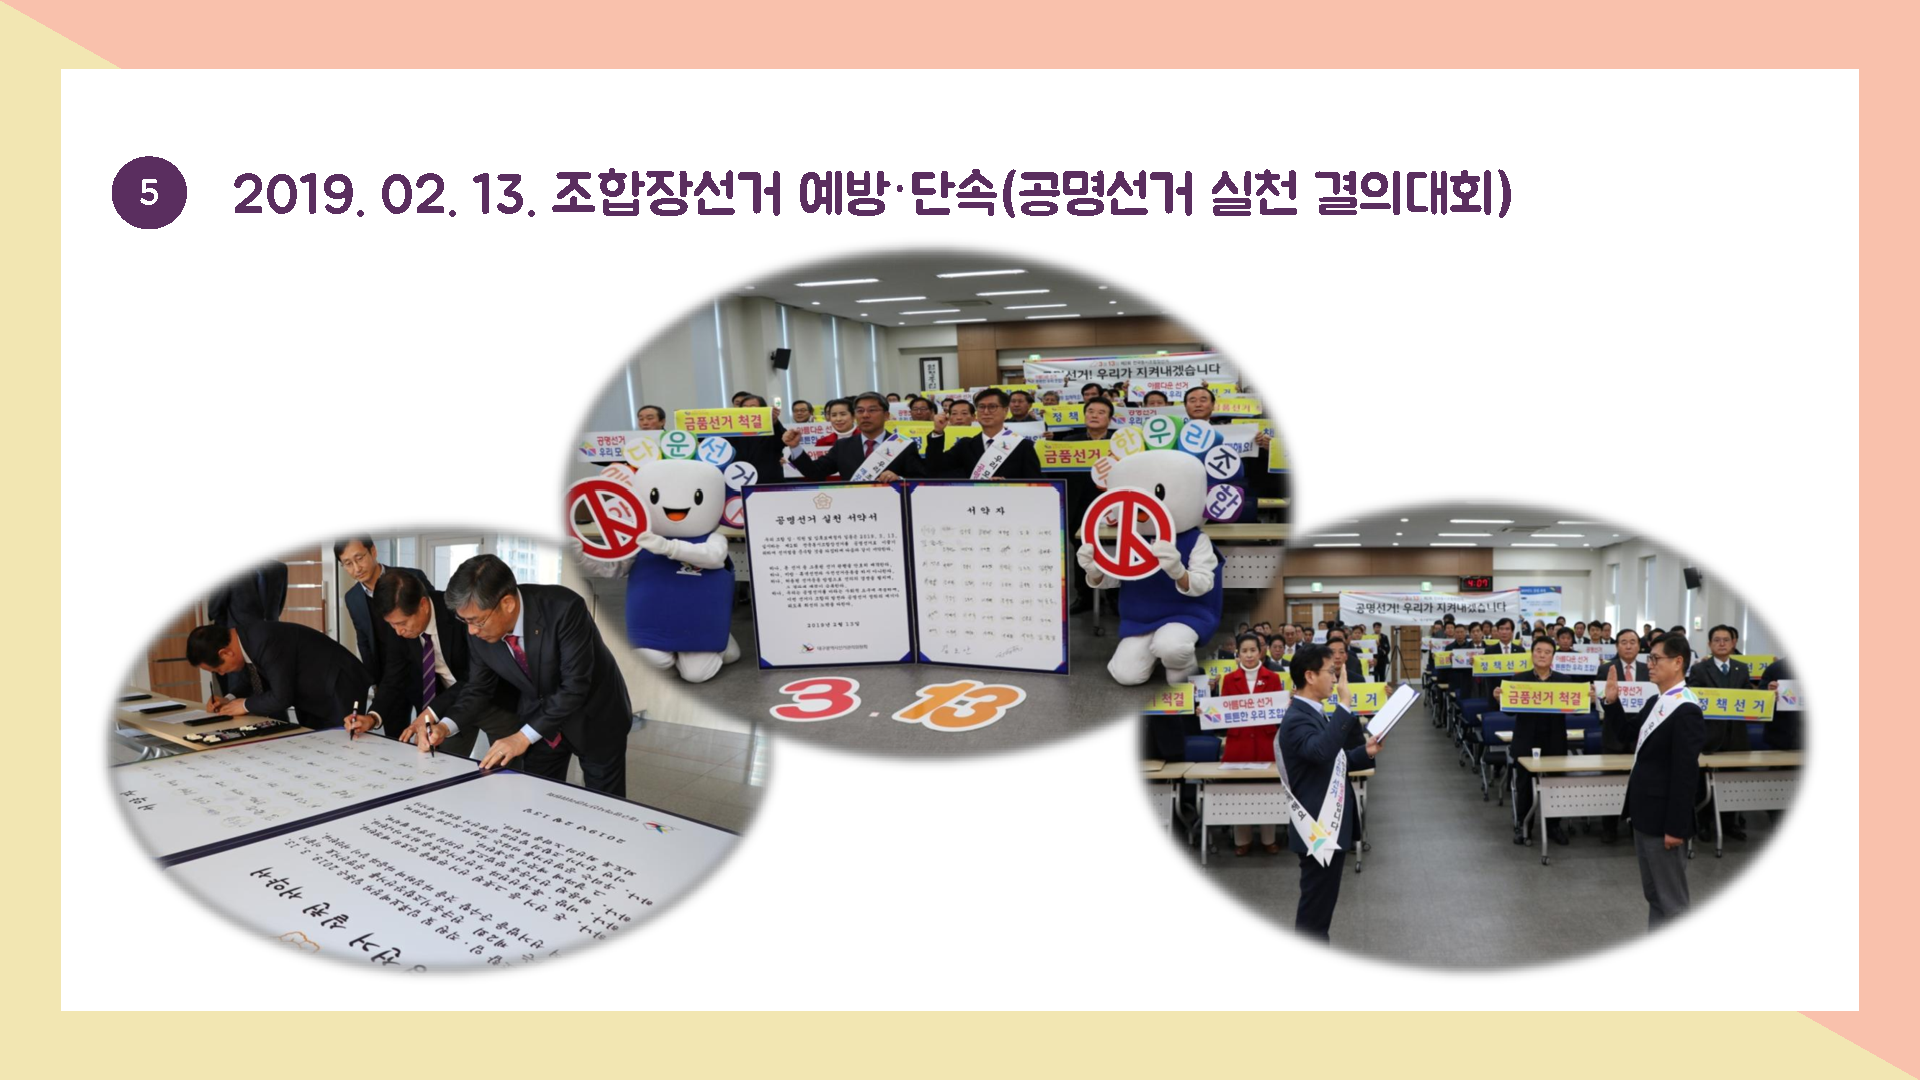 2019.02.13. 조합장선거 예방ㆍ단속(공명선거 실천 결의대회)